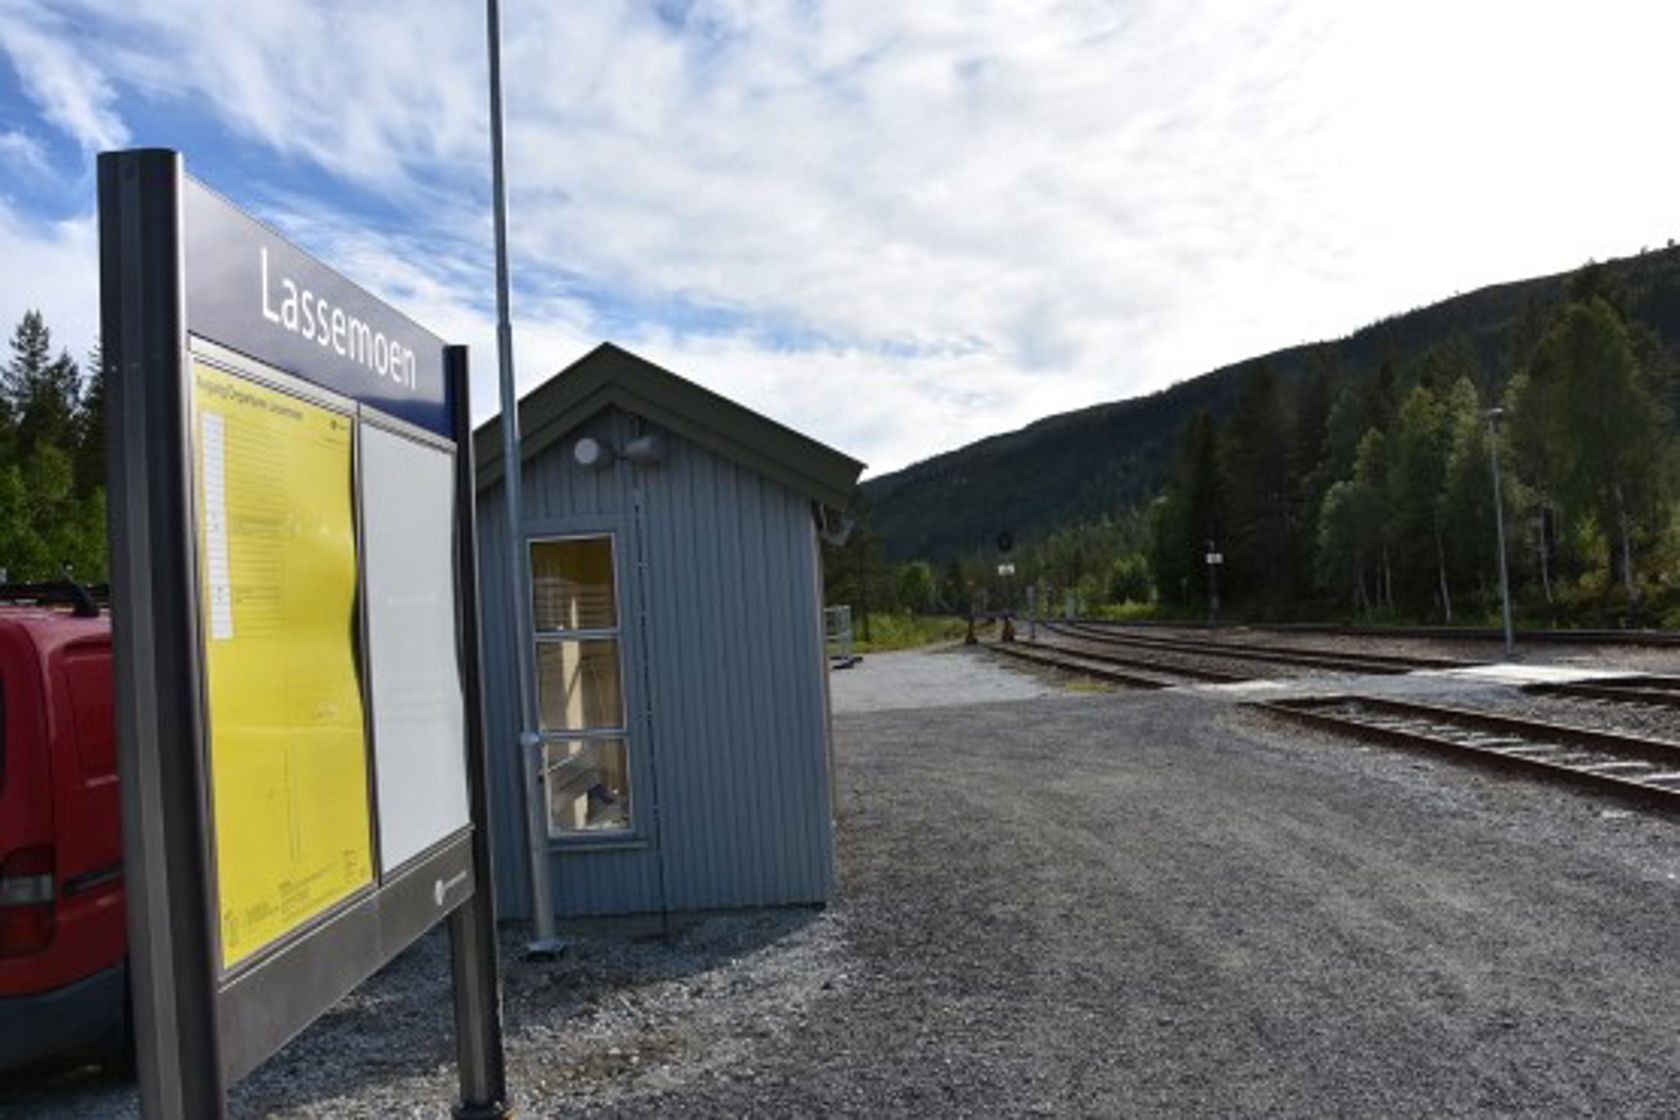 Exterior view of Lassemoen station